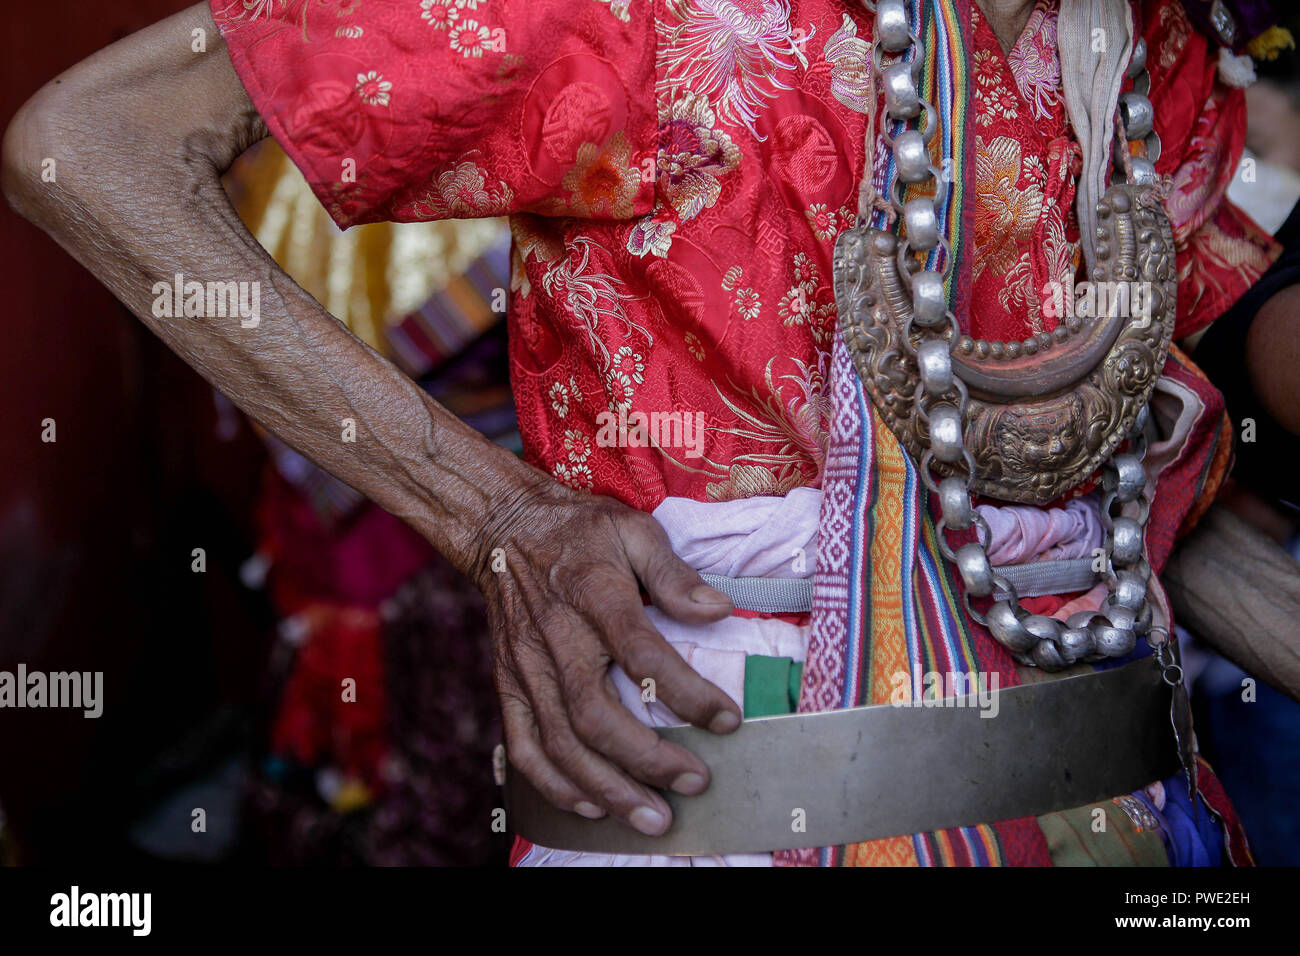 Eine Nepalesische devotee bereitet sich auf die religiöse Maske Leistung während des Shikali Festival. Shikali Festival 300 Jahre alt Festival feierte durch ethnische Newari Gemeinschaft von Khokana Dorf während des Festivals Anhänger tragen Masken der verschiedenen Gottheiten, Tänze aufführen, und das Opfer, Tiere in der Hoffnung, immer den Segen der Götter. Menschen bilden das Dorf Shikali Festival als Alternative von dashain Festival feiern, feiert den Sieg der Götter über das Böse. Stockfoto